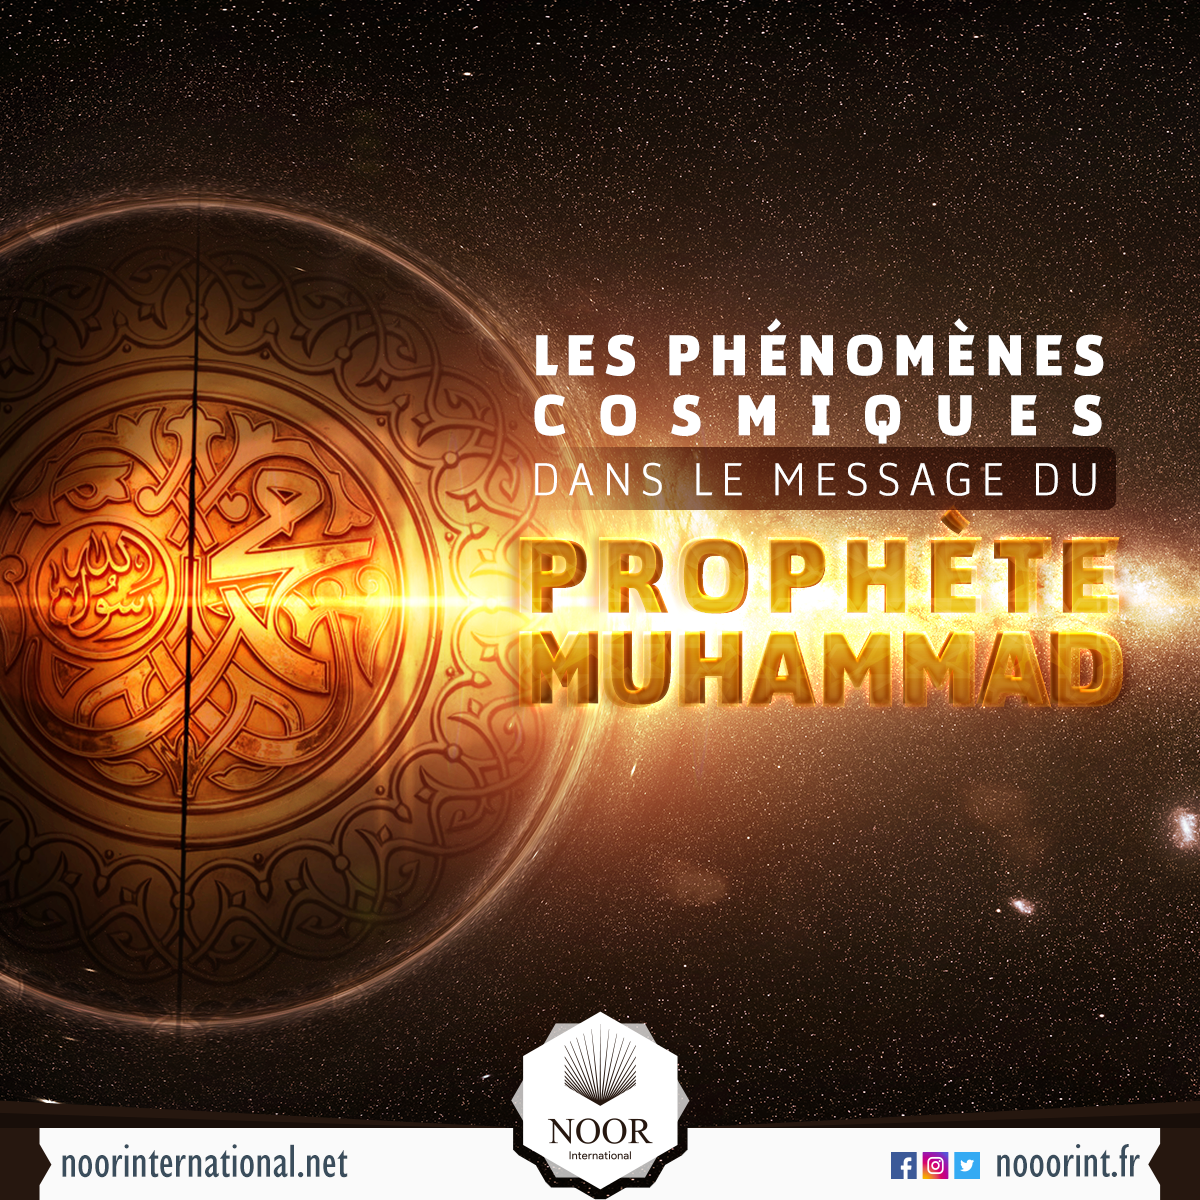 Les phénomènes cosmiques dans le message du prophète Muhammad